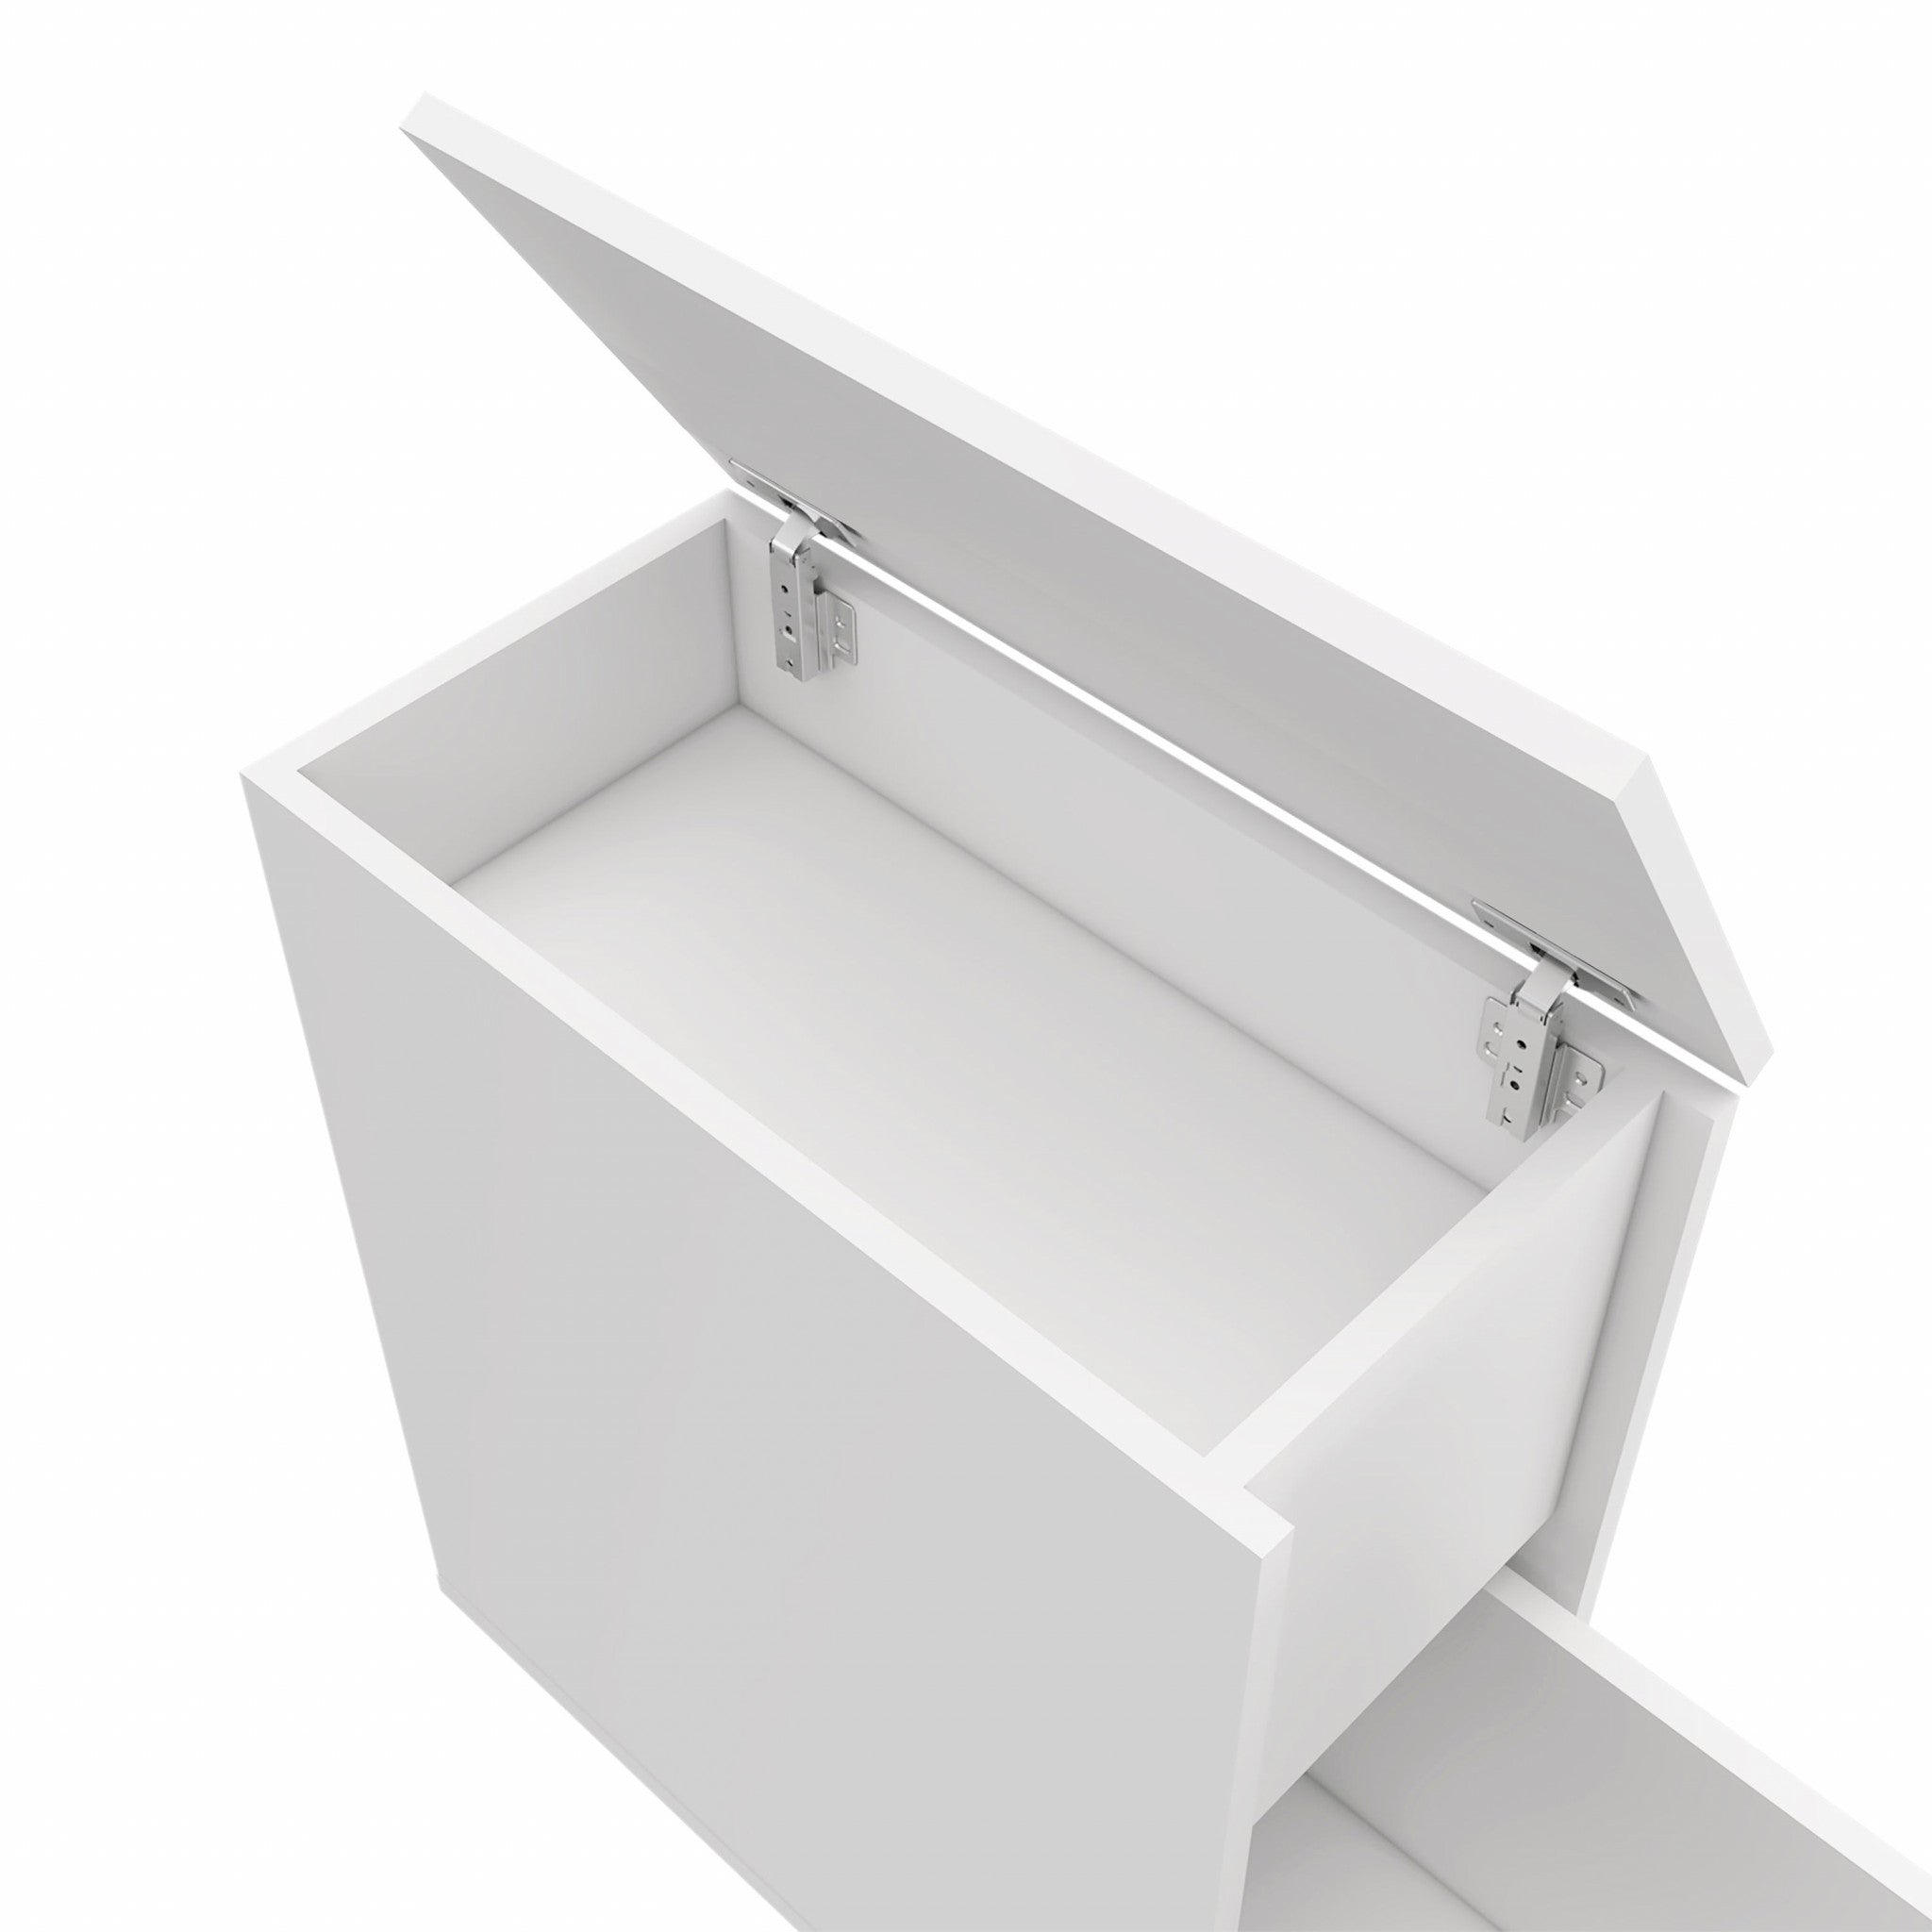 24" White One Drawer Bathroom Storage Cabinet